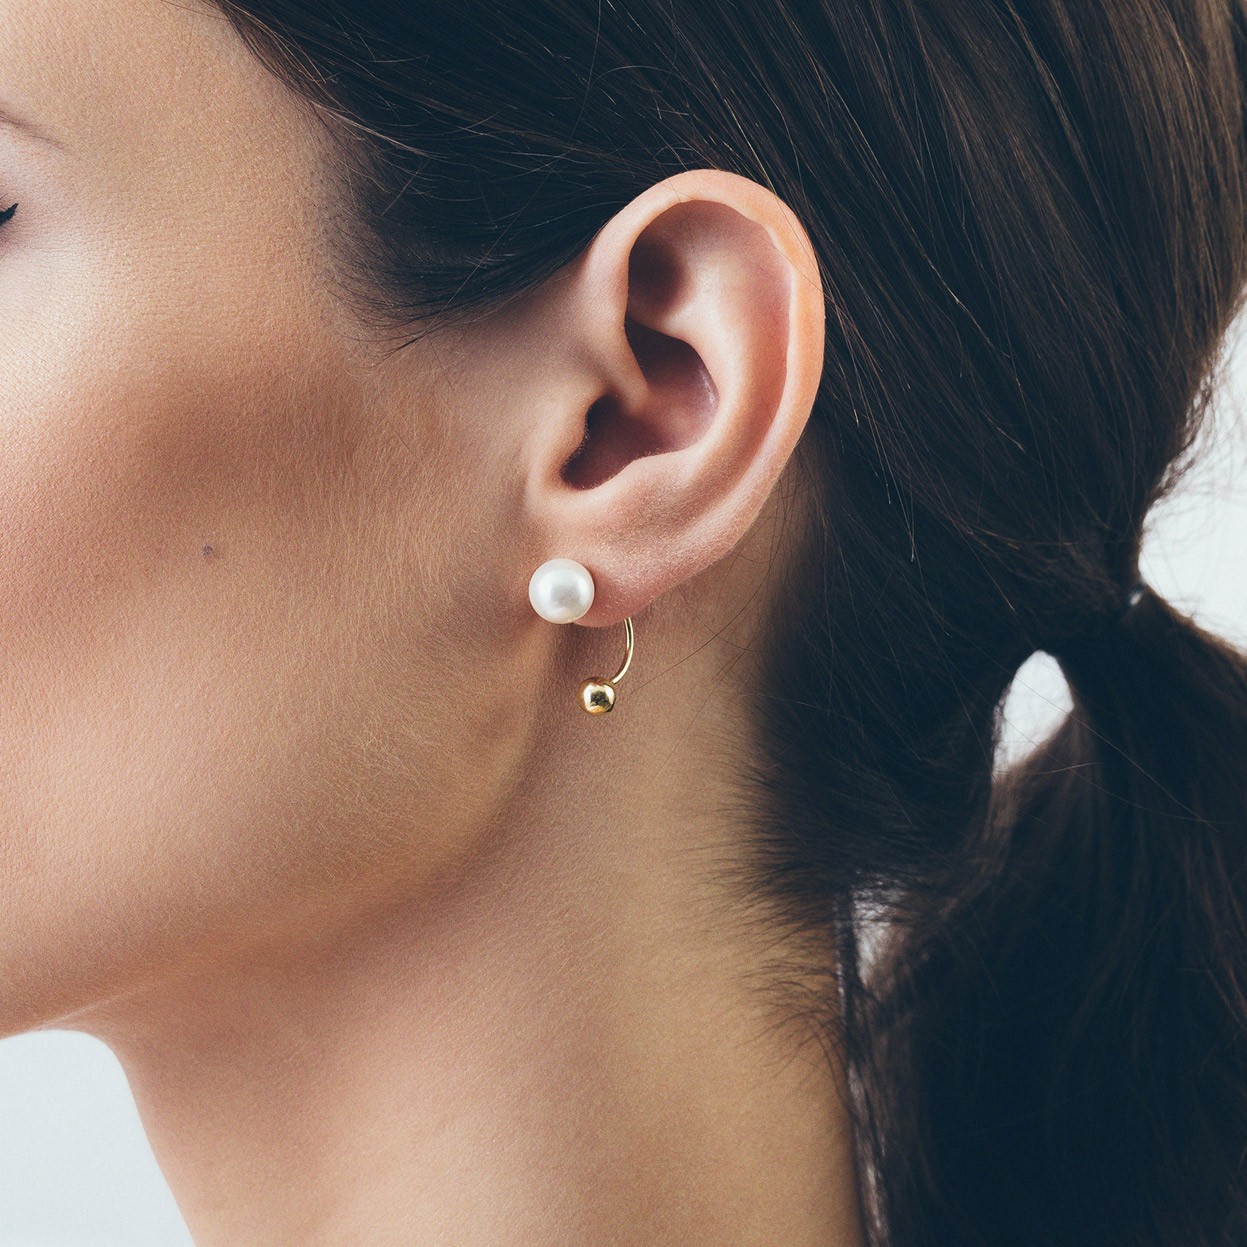 Share more than 81 front back ball earrings - 3tdesign.edu.vn